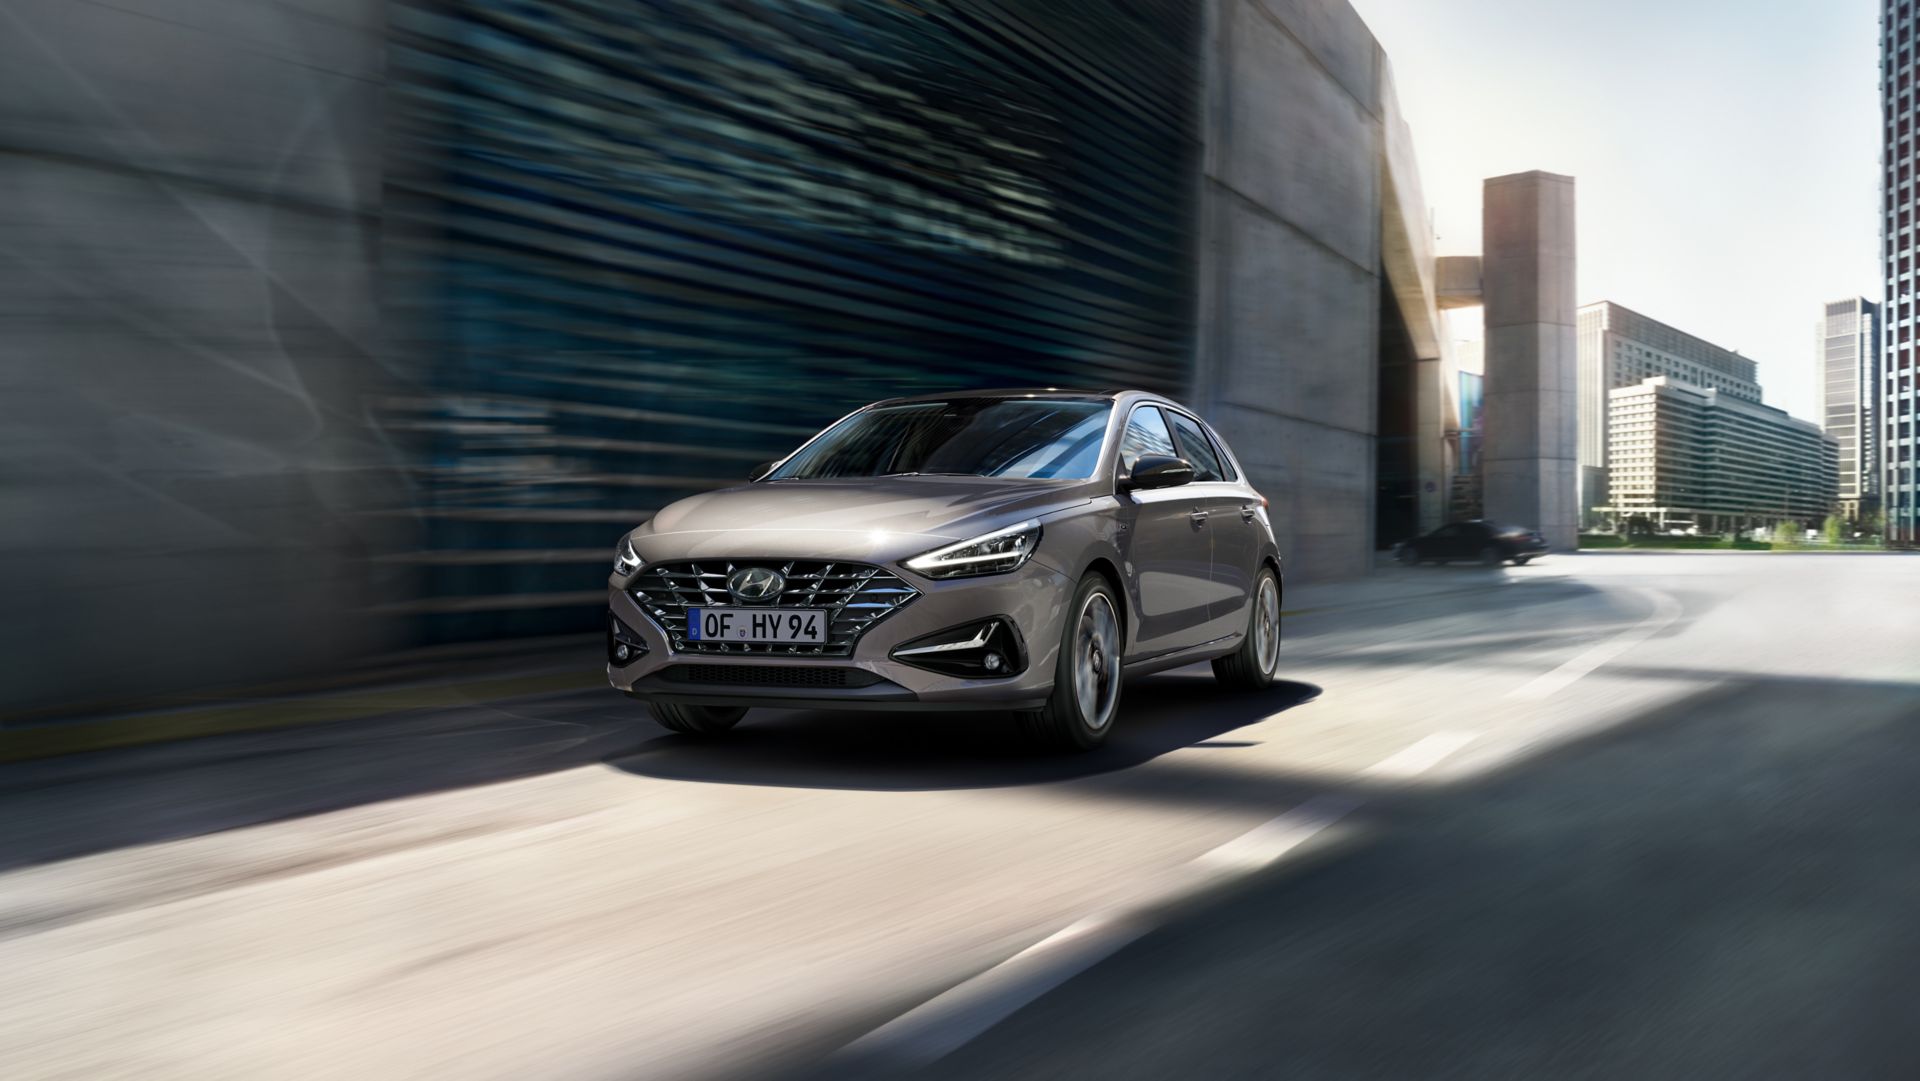 Hyundai Nuova i30 - Promozioni e Prezzi 2019